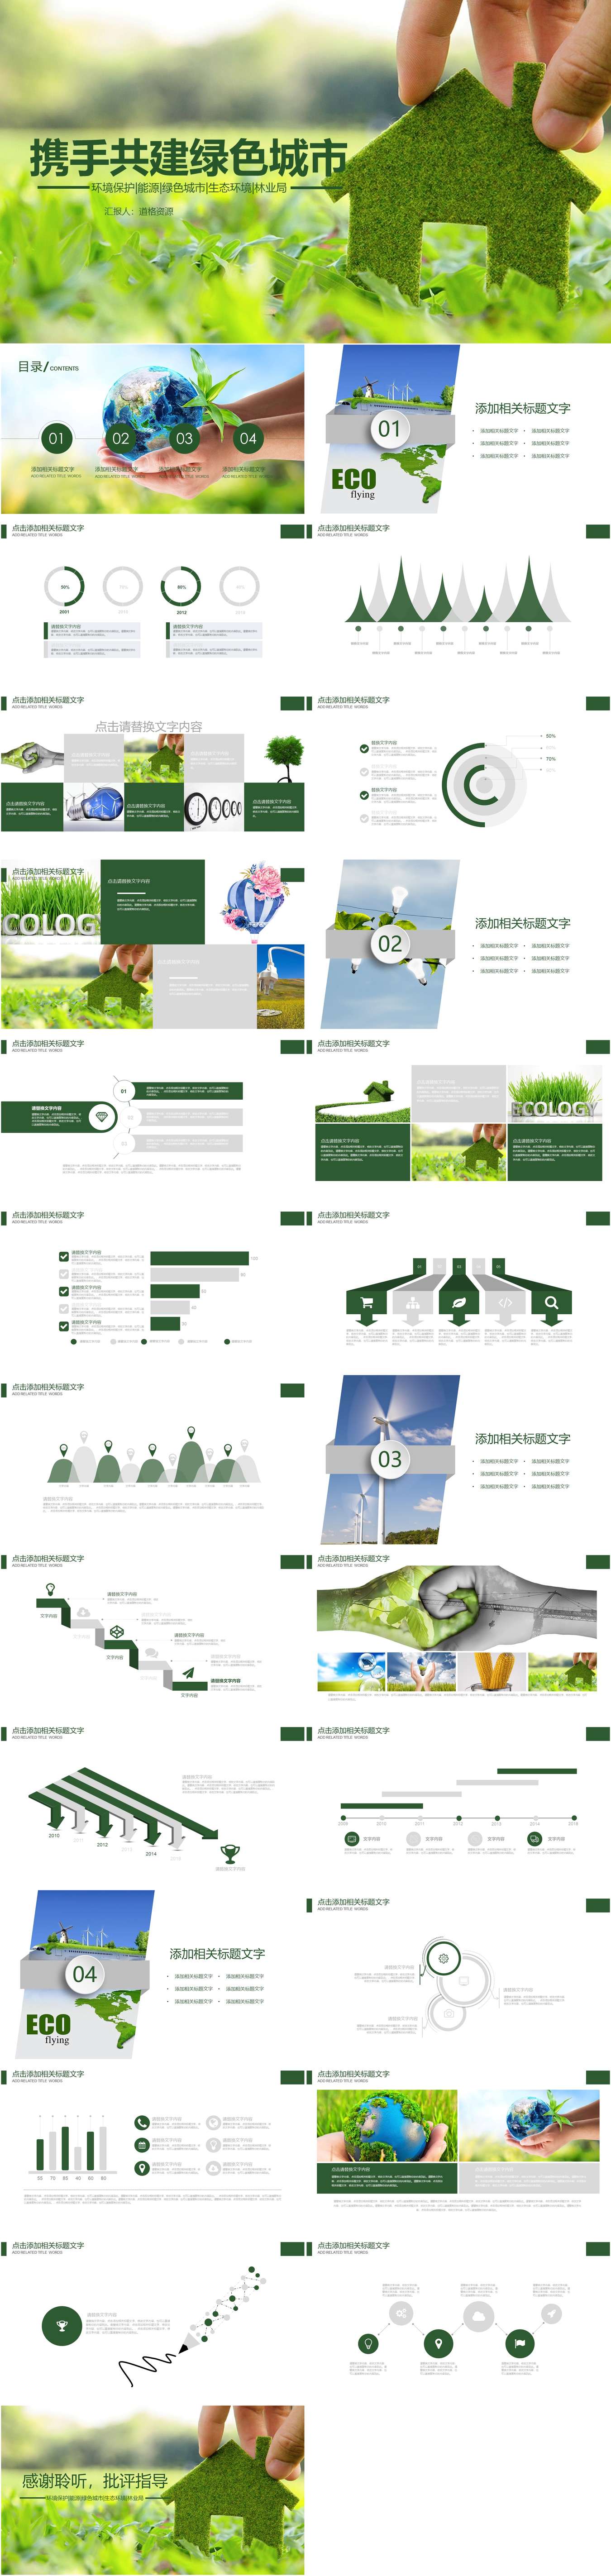 绿色环保教育环境生态保护ppt模板